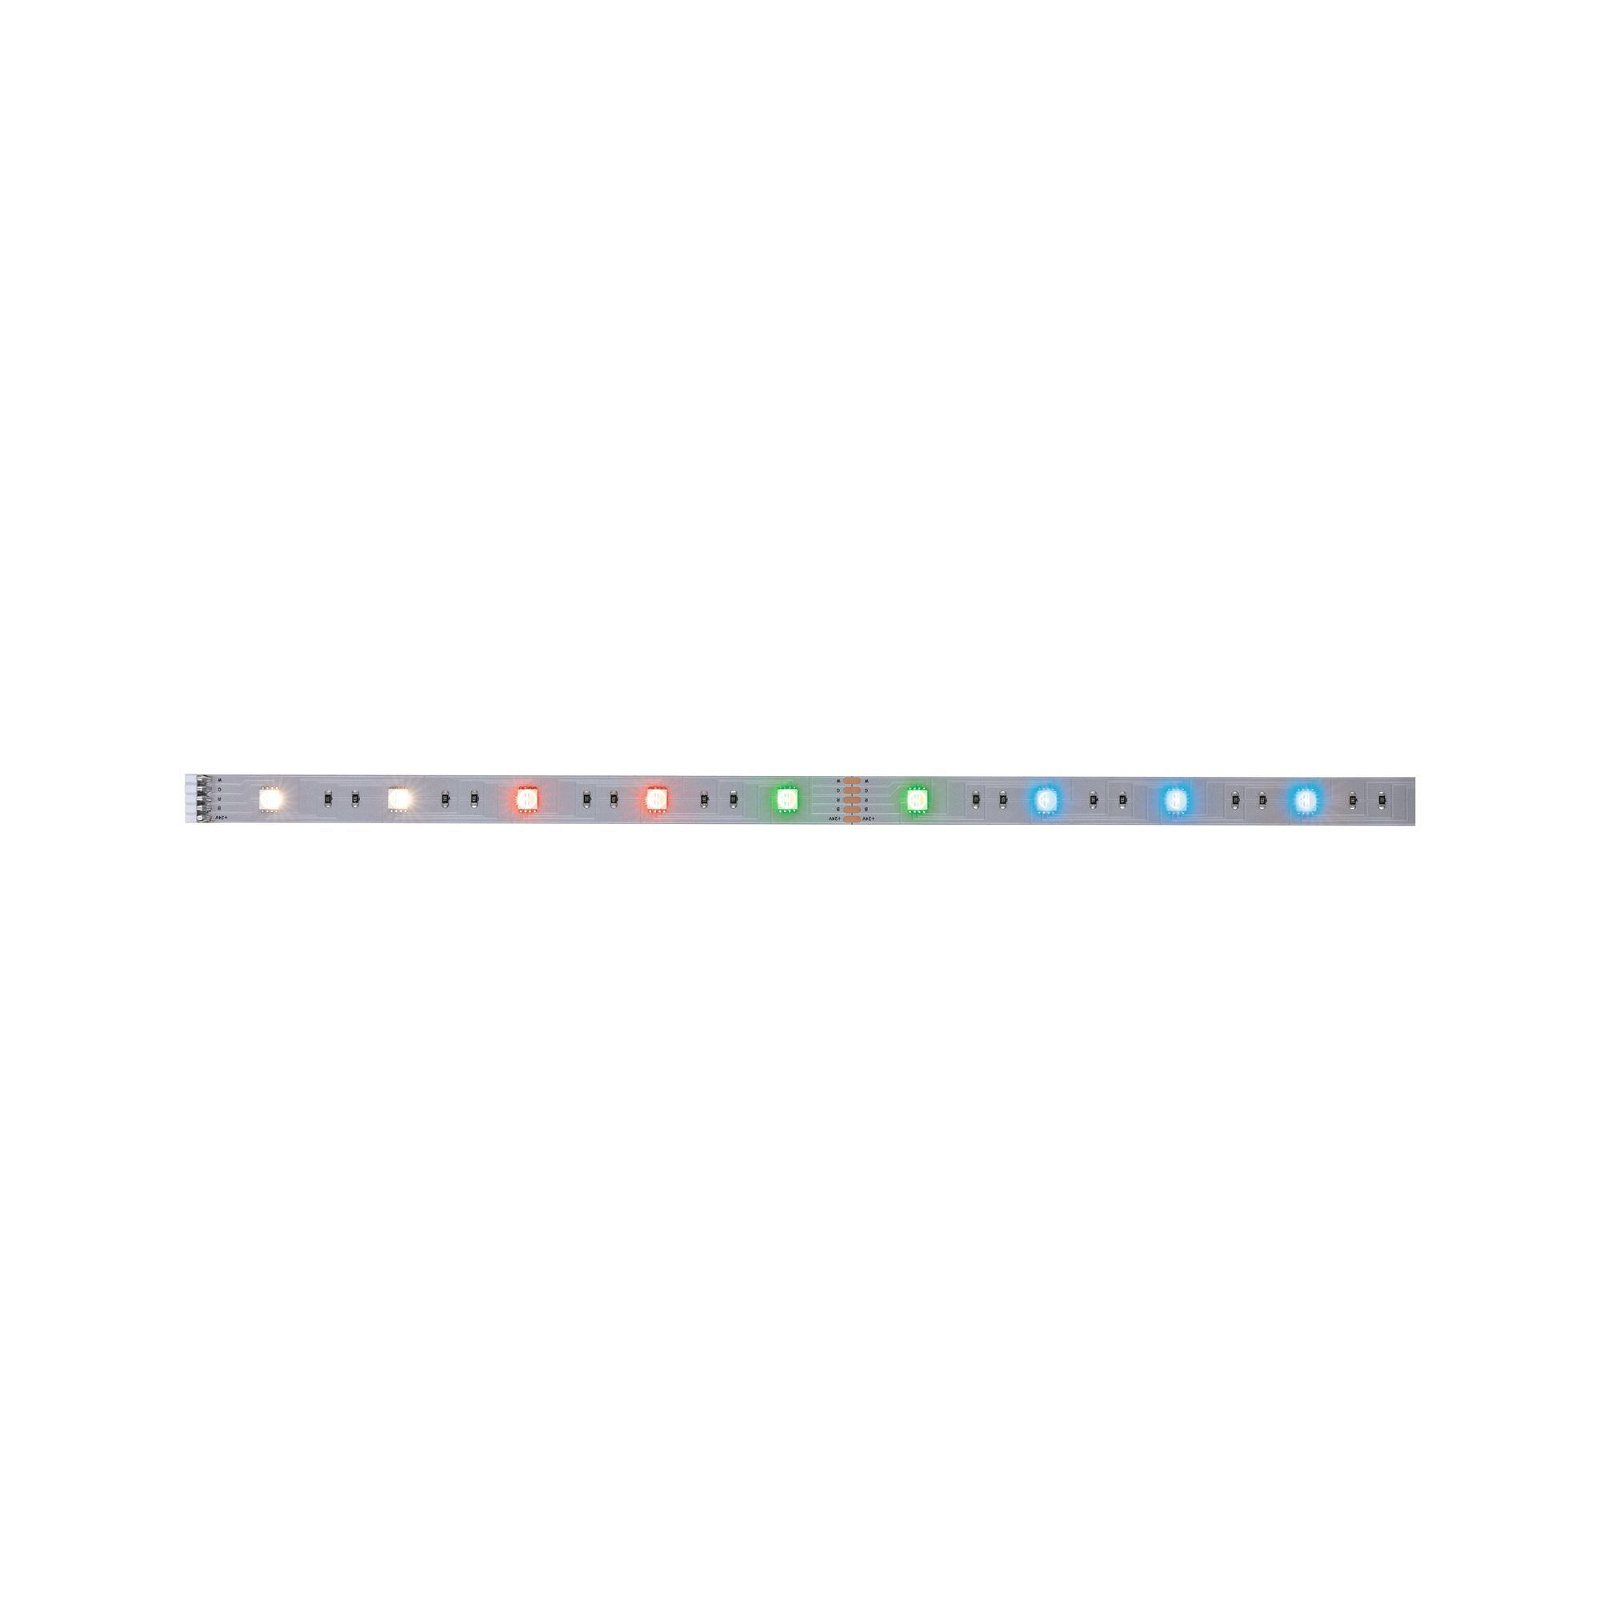 PAULMANN LICHT MaxLED 250 (79865) White LED Farbwechsel Strips RGBW|Tunable